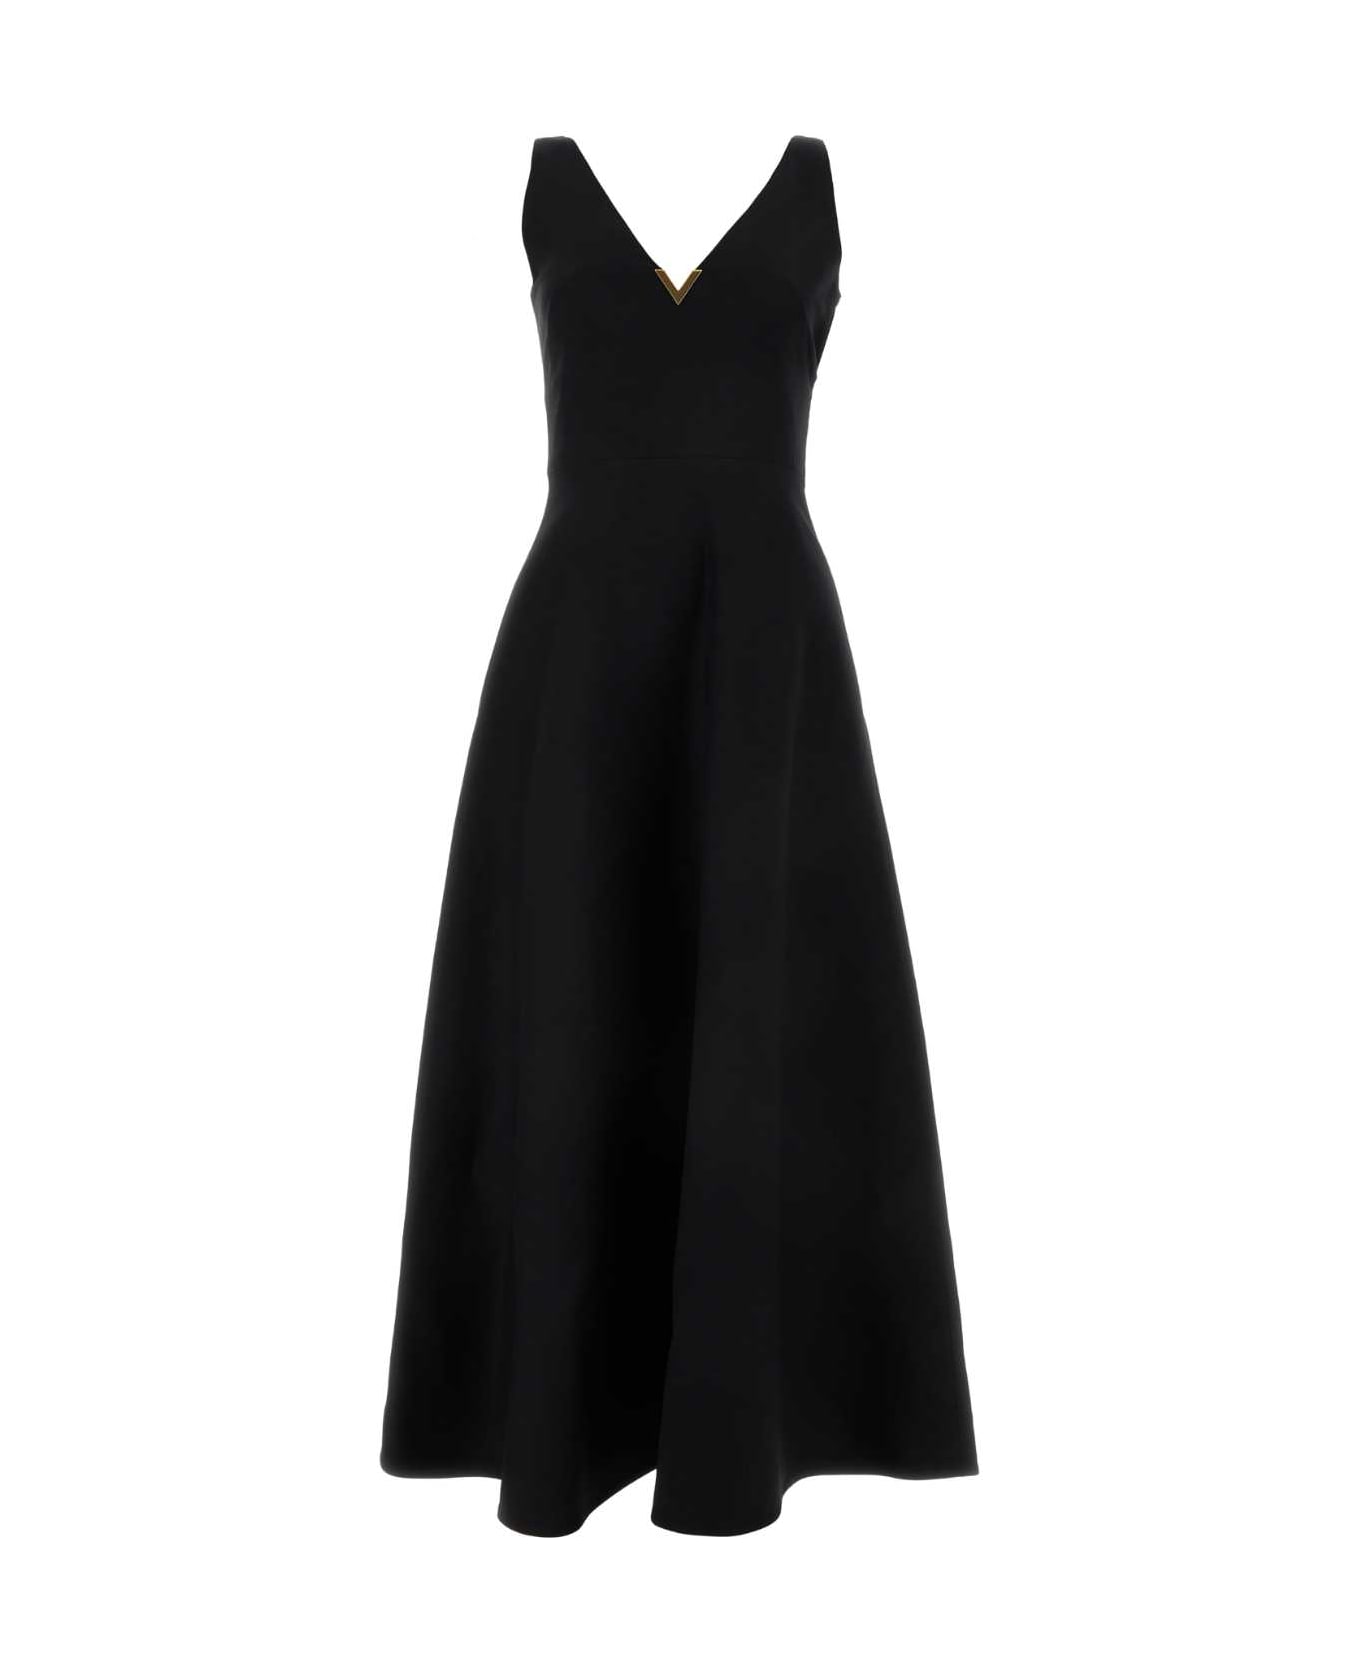 Valentino Garavani Black Crepe Couture Dress - NERO